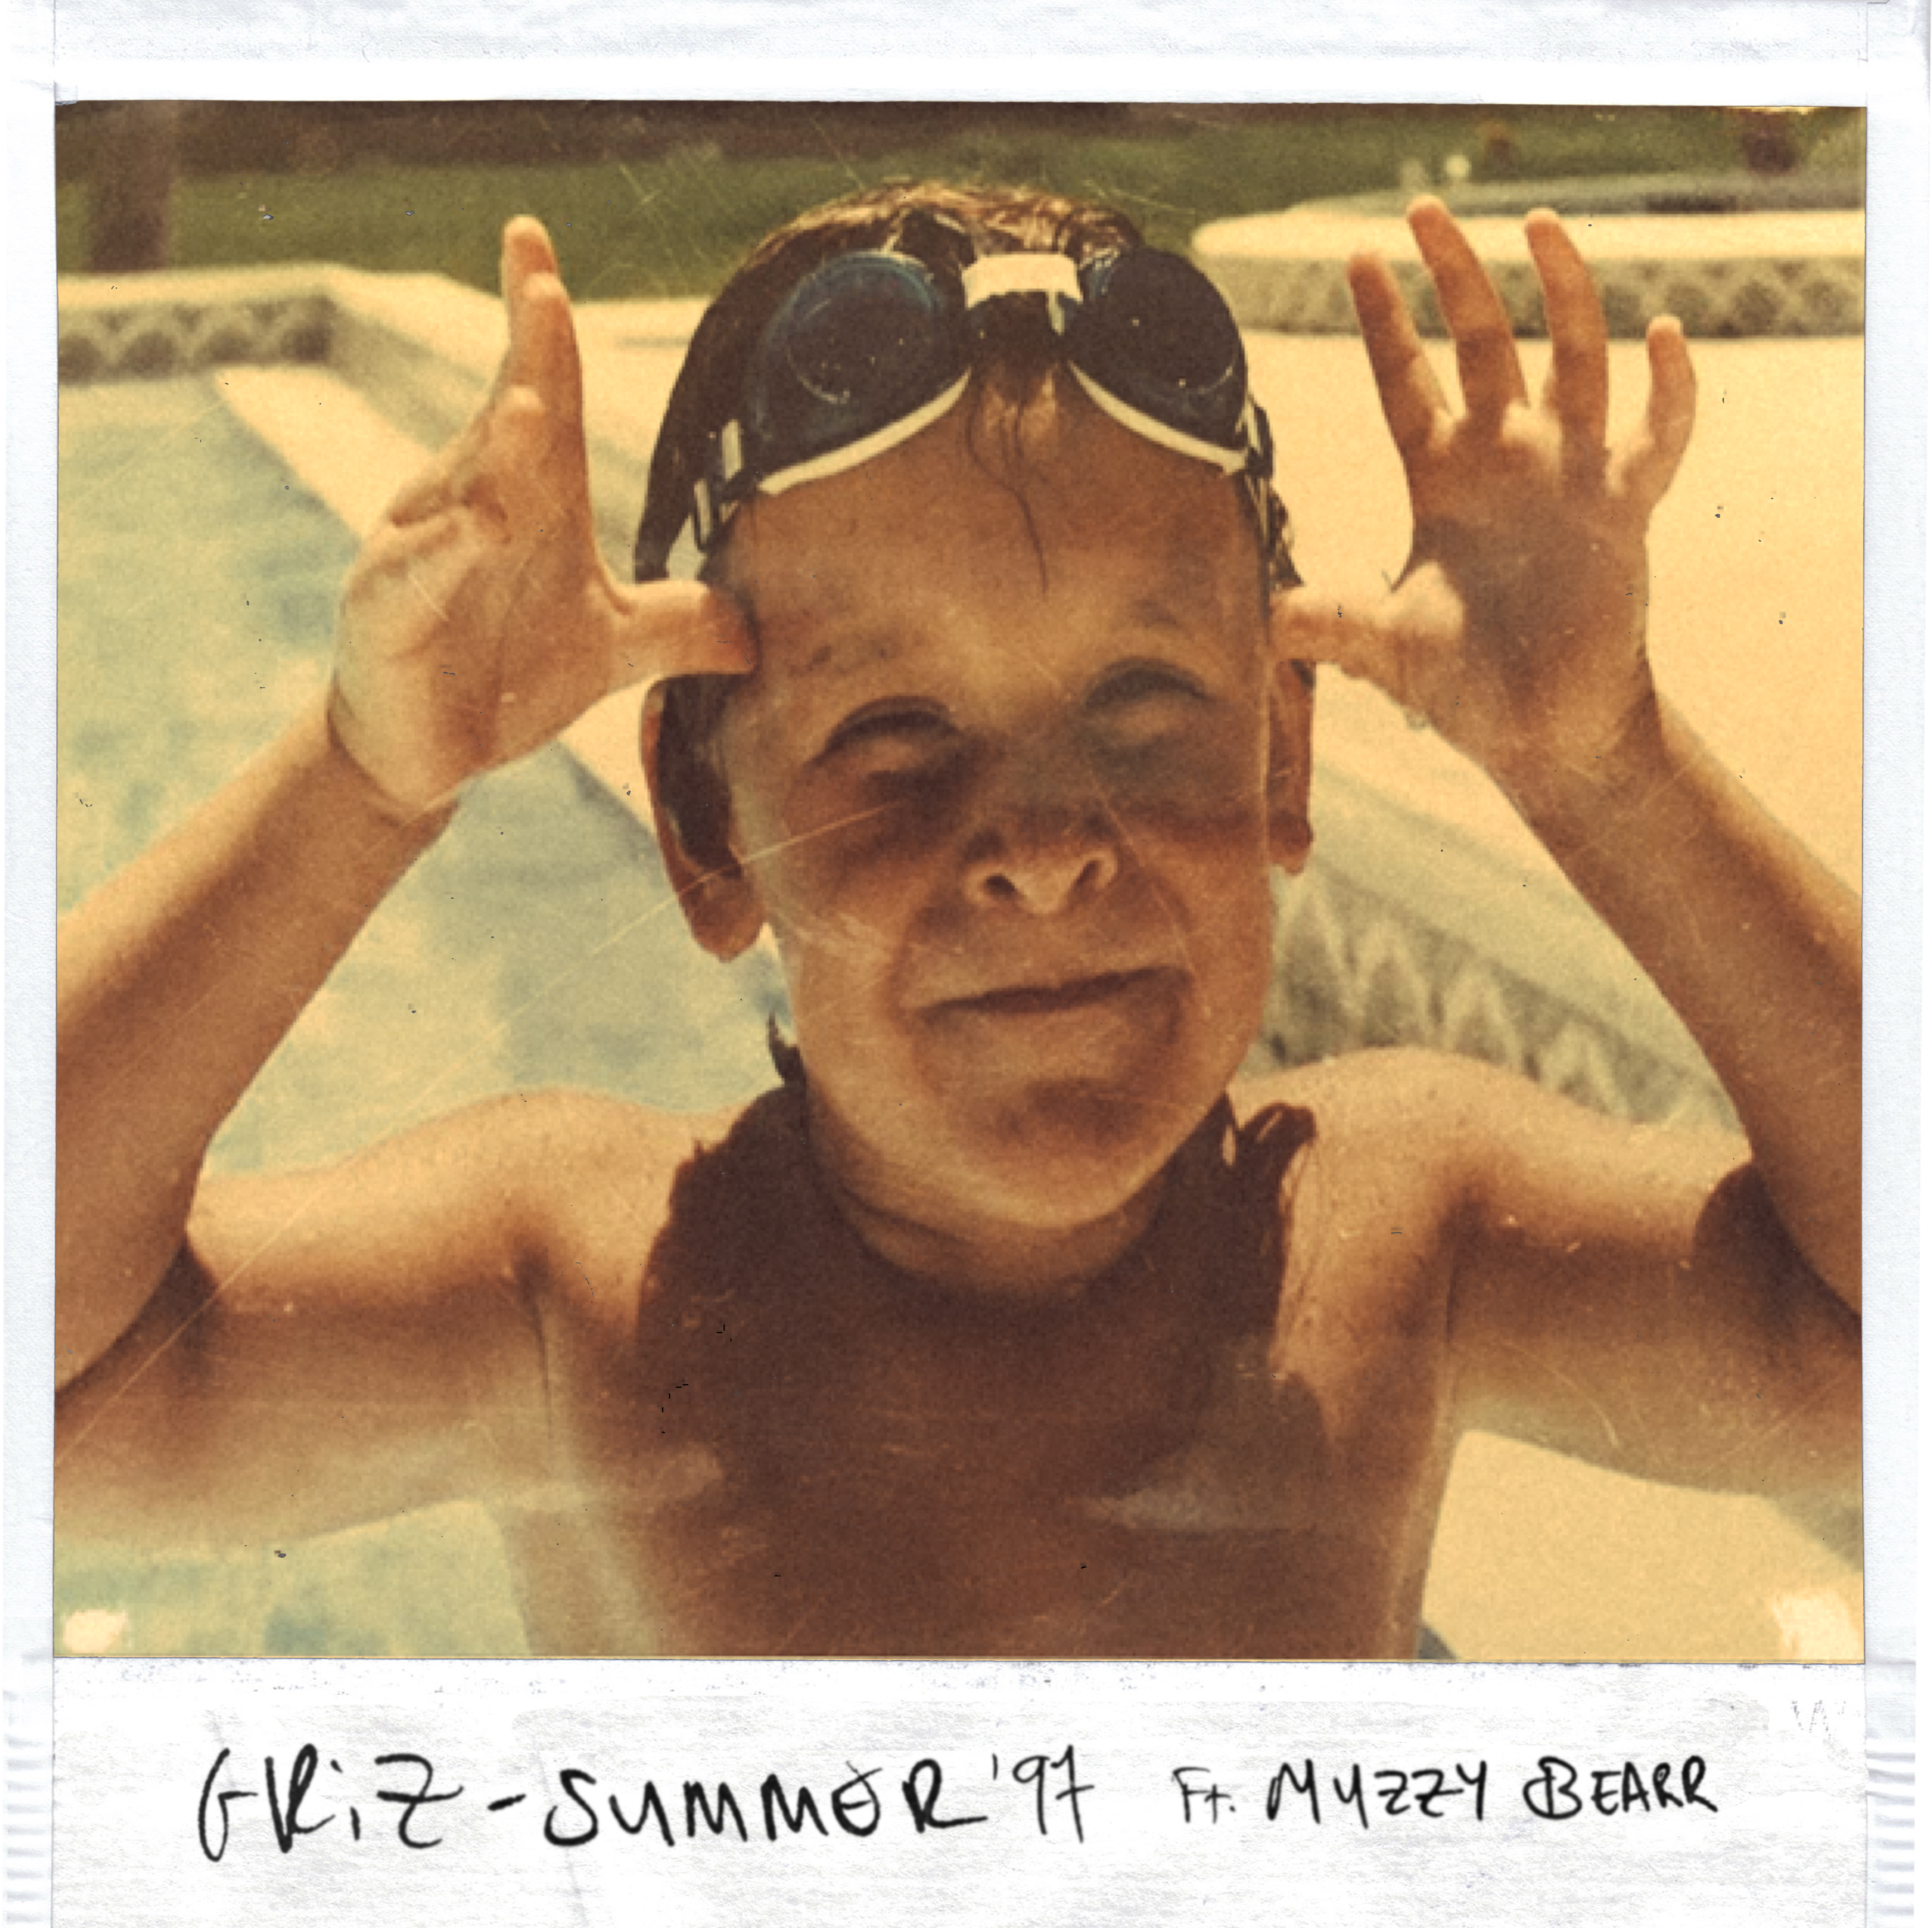 Download Summer '97 ft. Muzzy Bearr